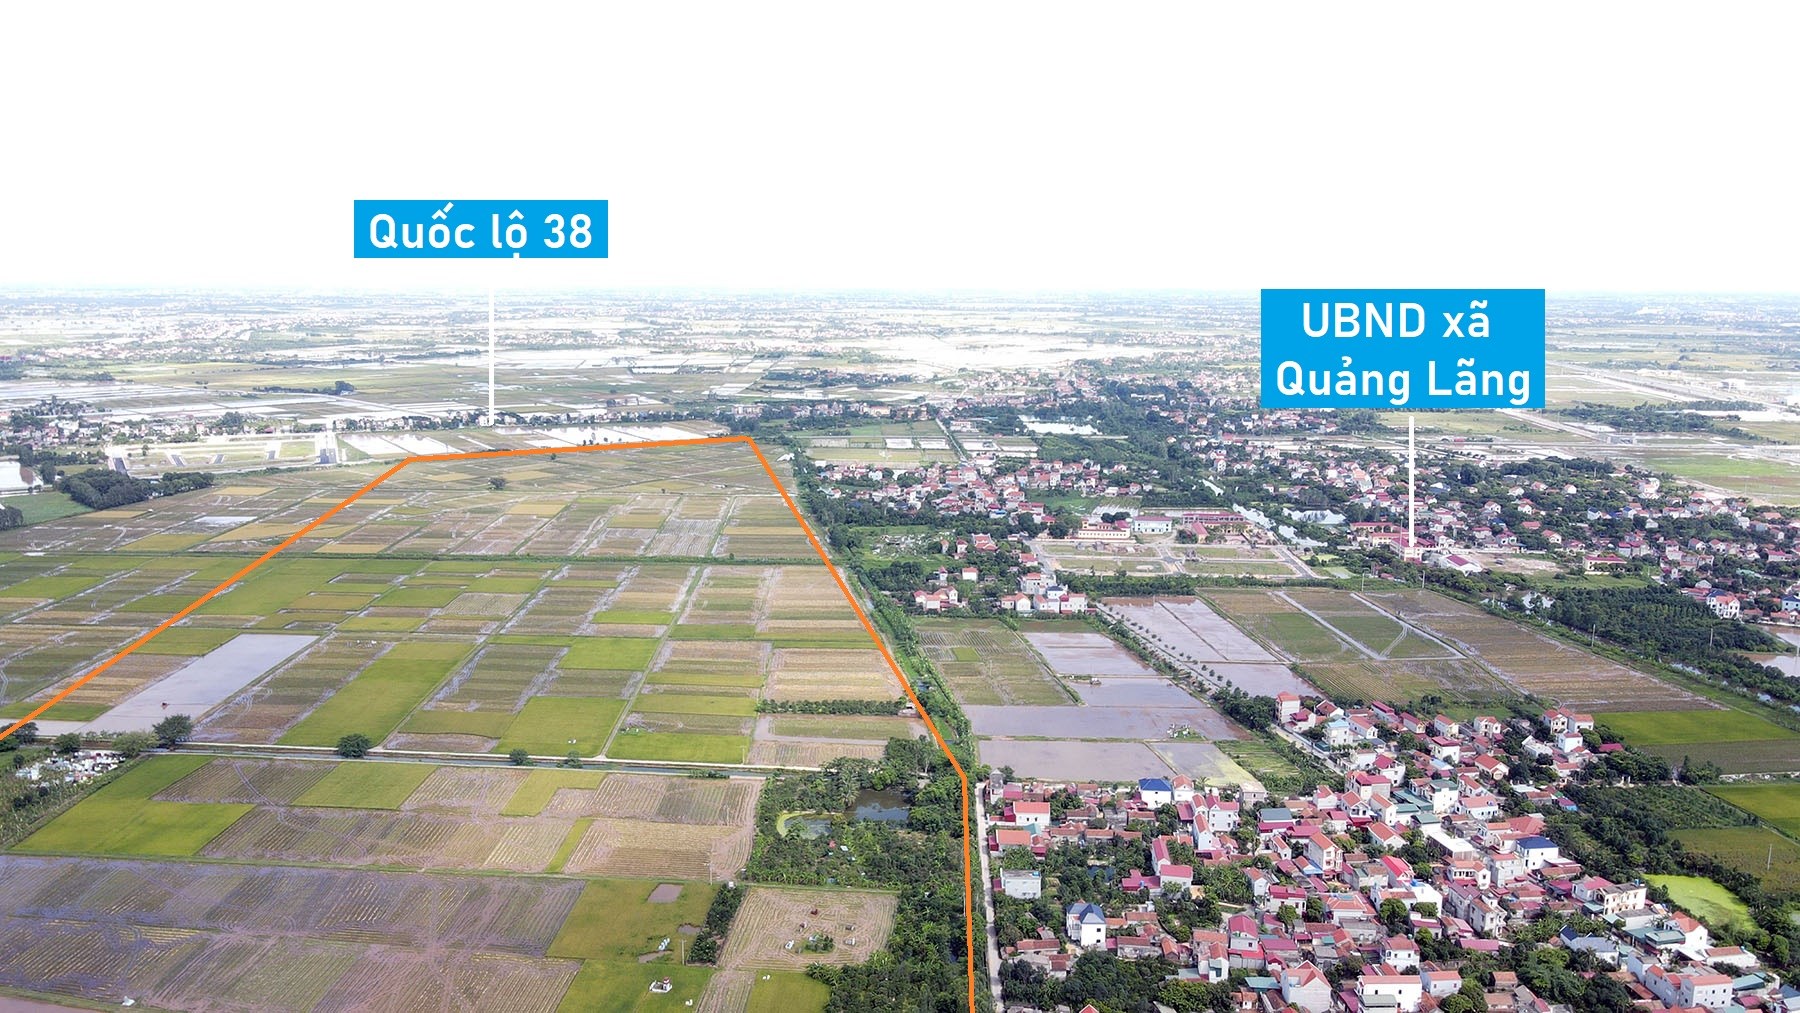 Toàn cảnh nơi quy hoạch KCN Thổ Hoàng 250 ha ở Hưng Yên vừa được chấp thuận chủ trương đầu tư